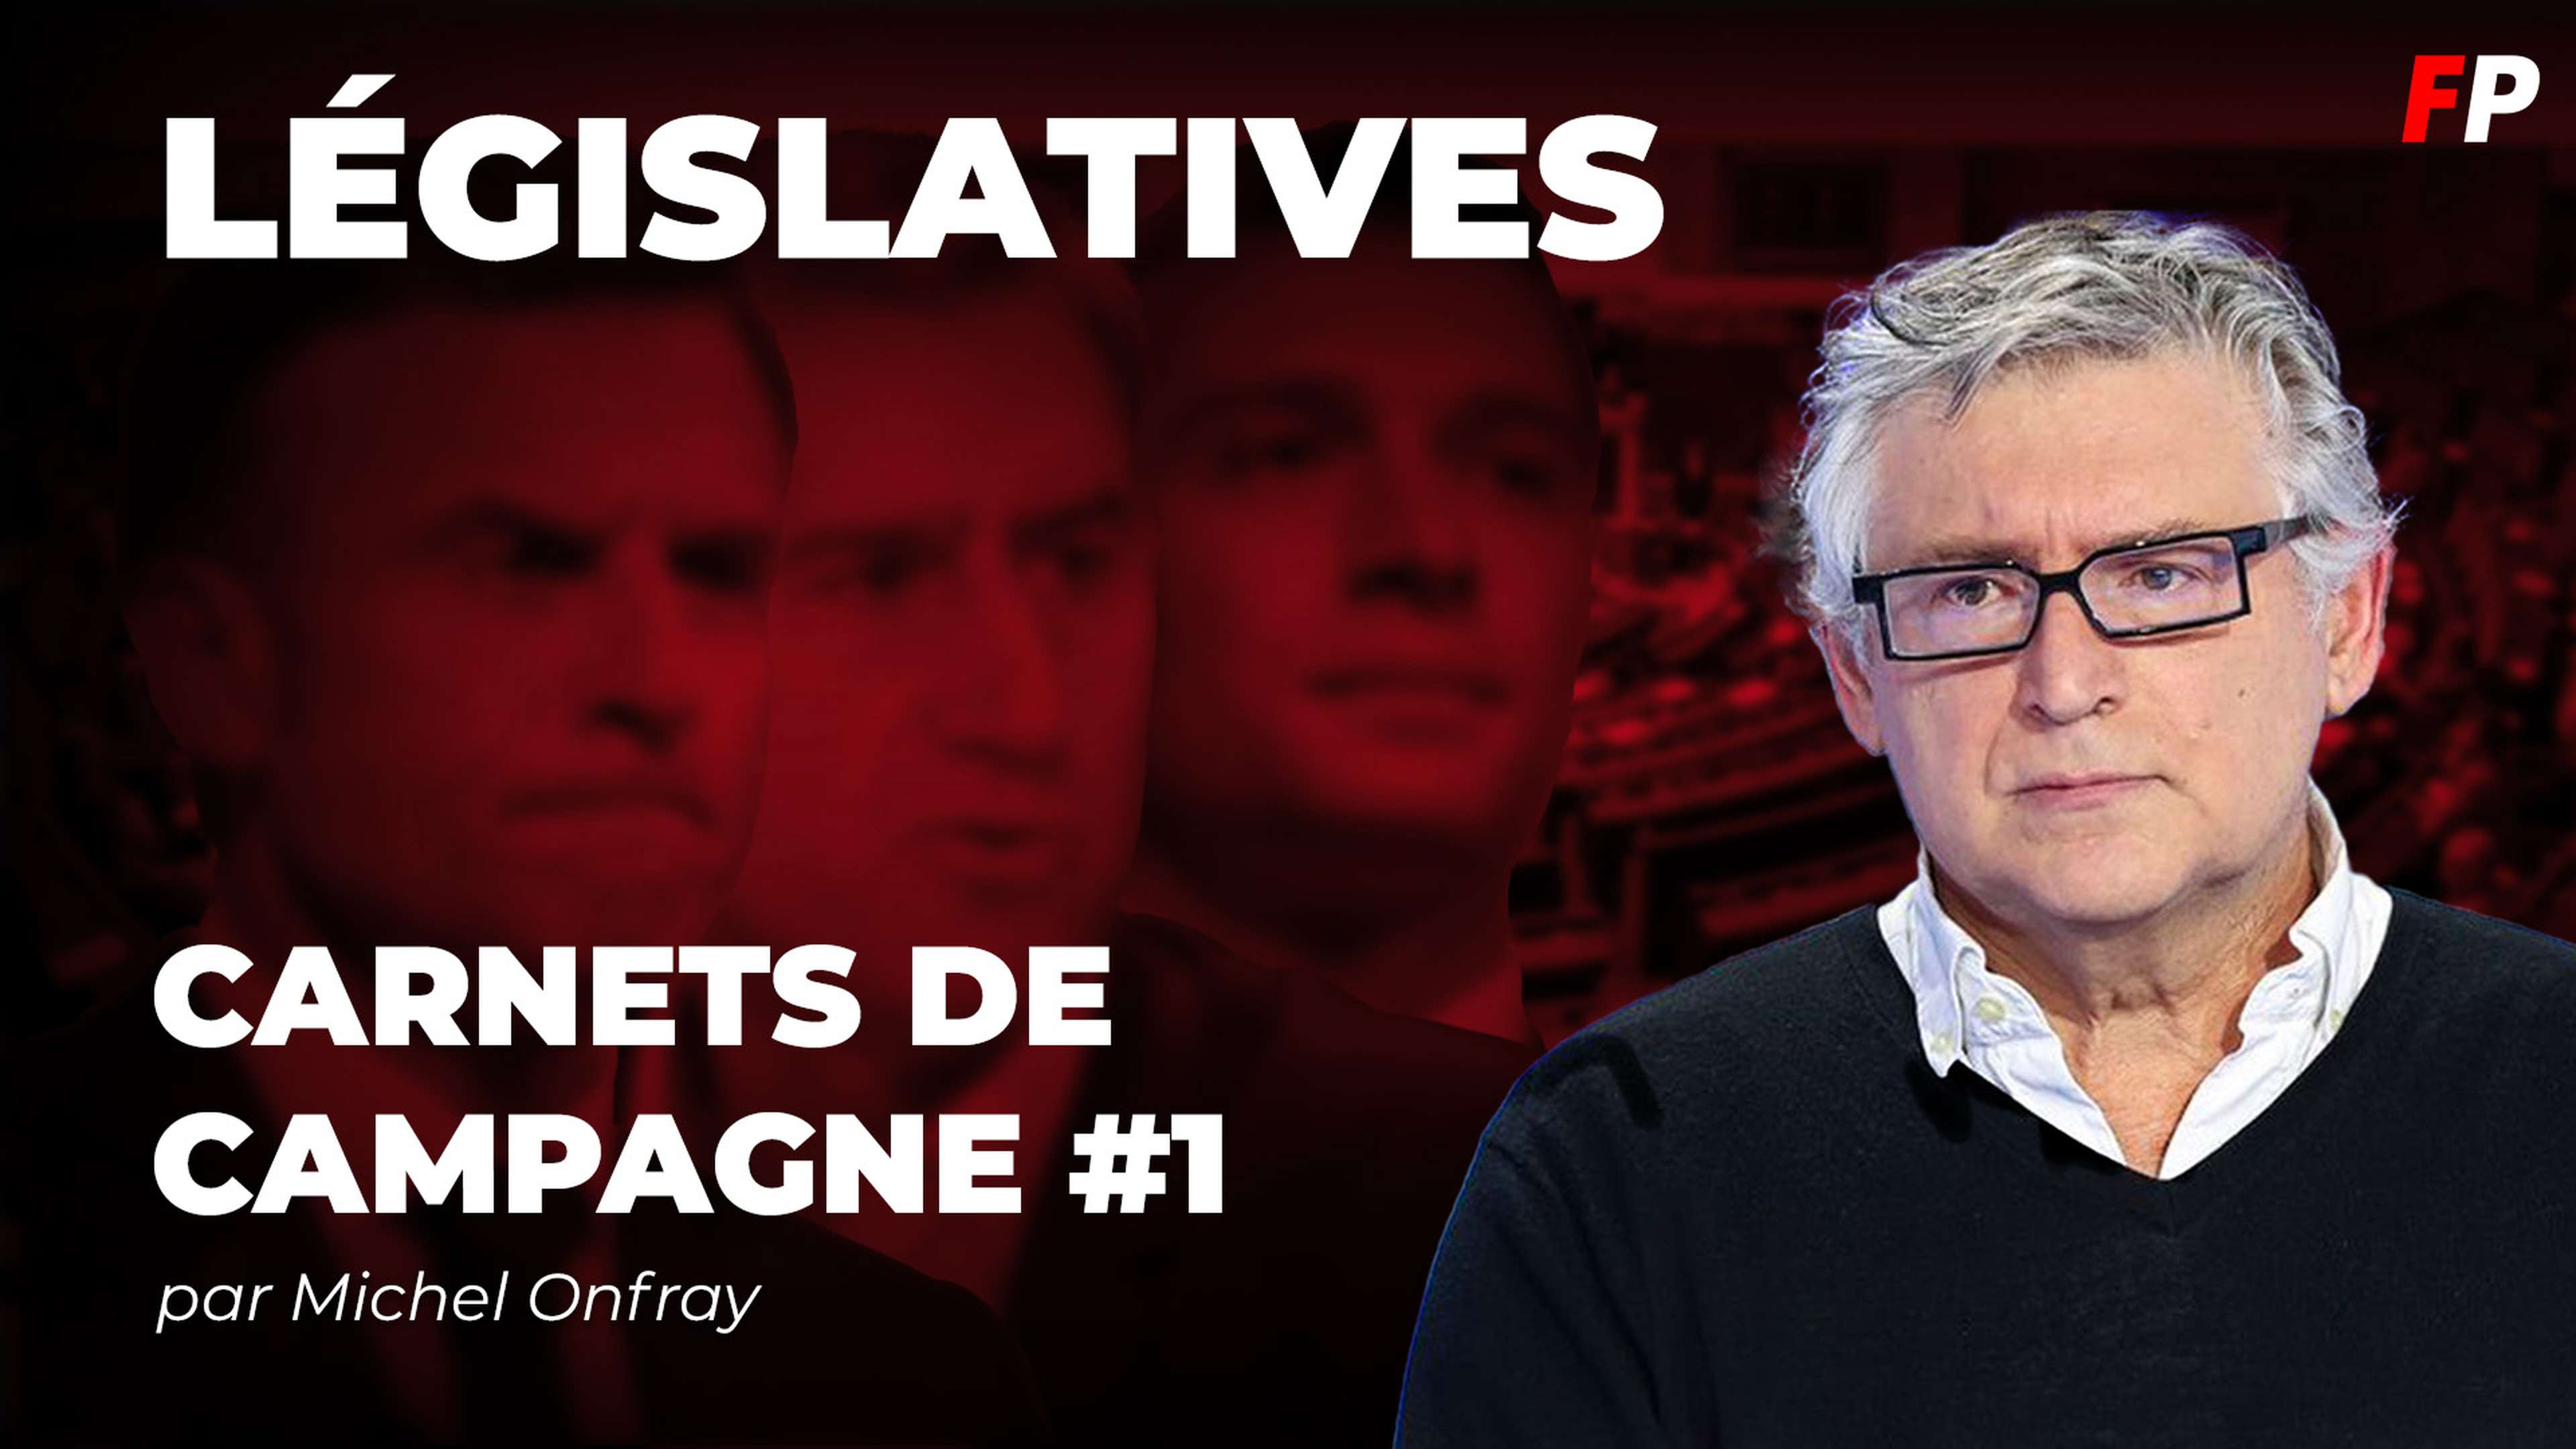 Législatives, le carnet de campagne de Michel Onfray (épisode 1) : l'article 16, ou la stratégie du chaos ?